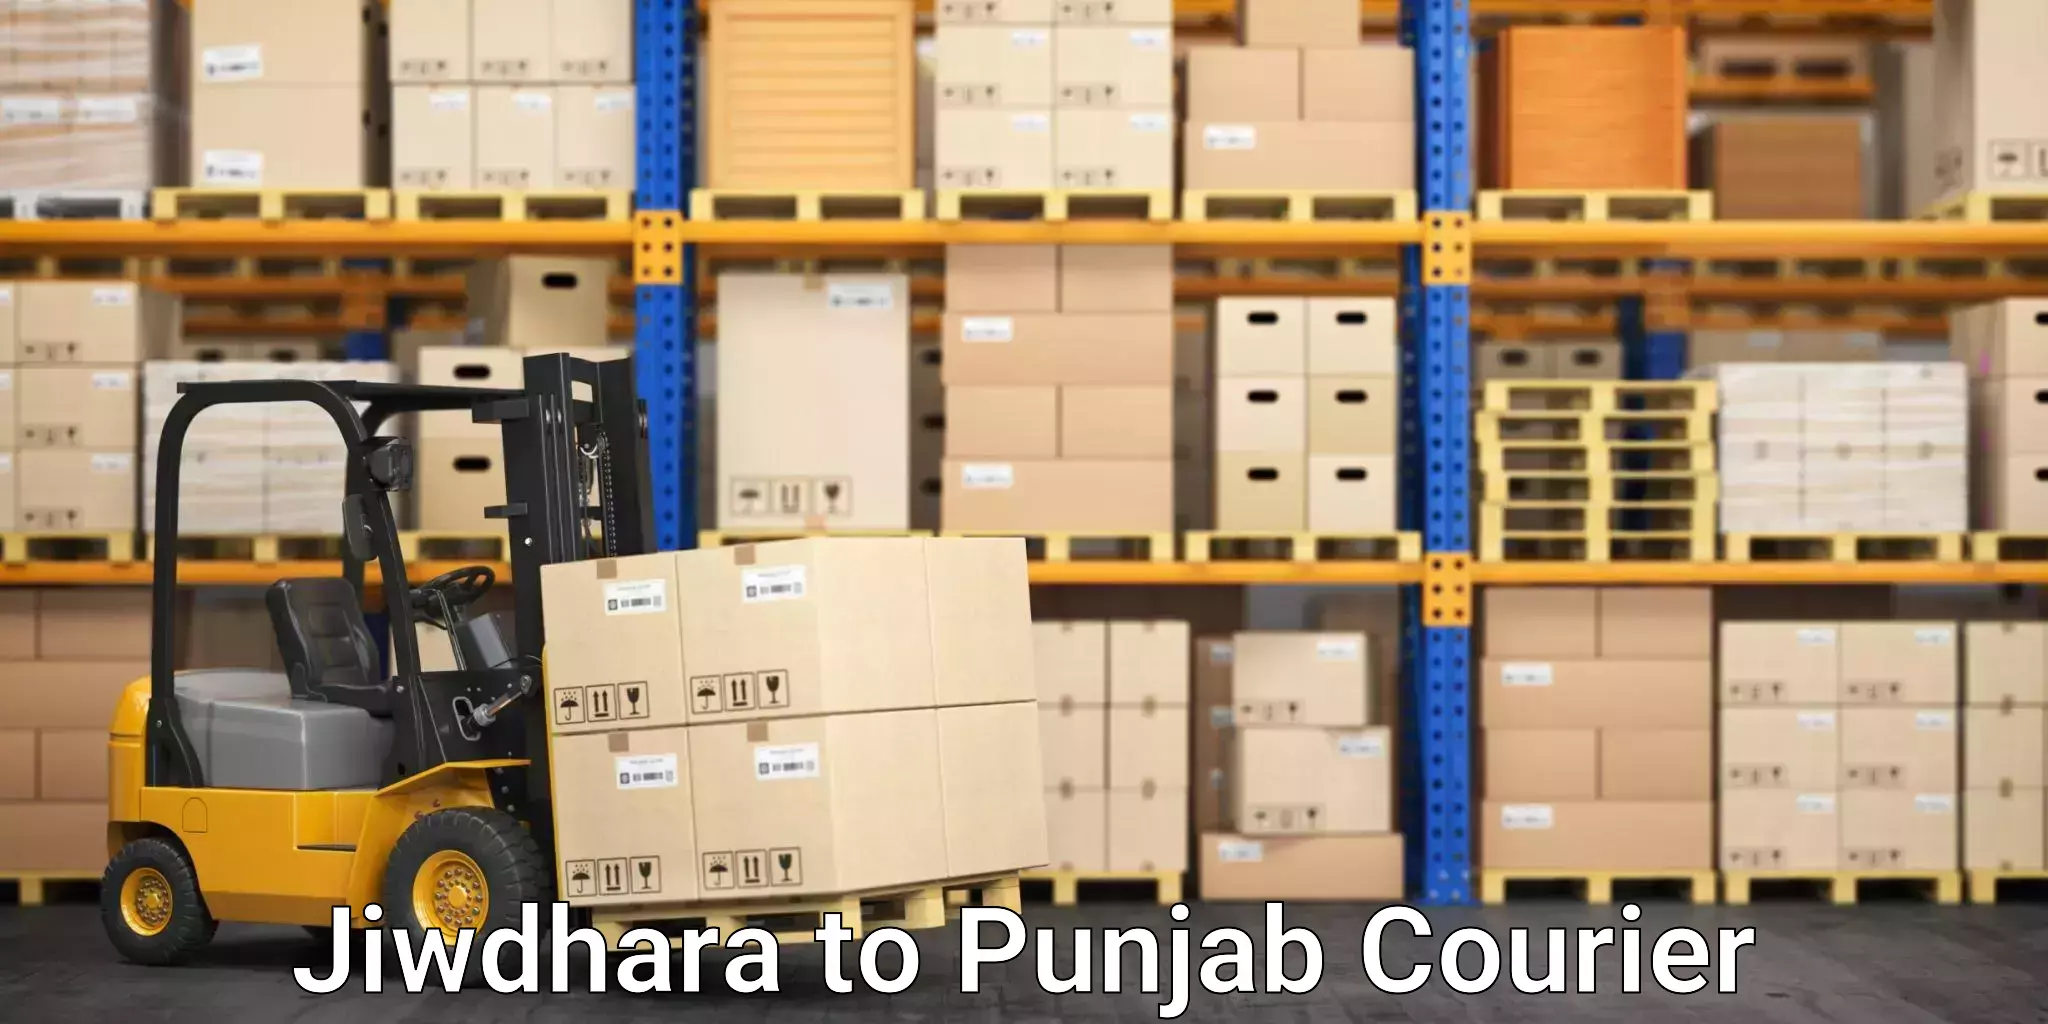 Professional moving company Jiwdhara to Ludhiana